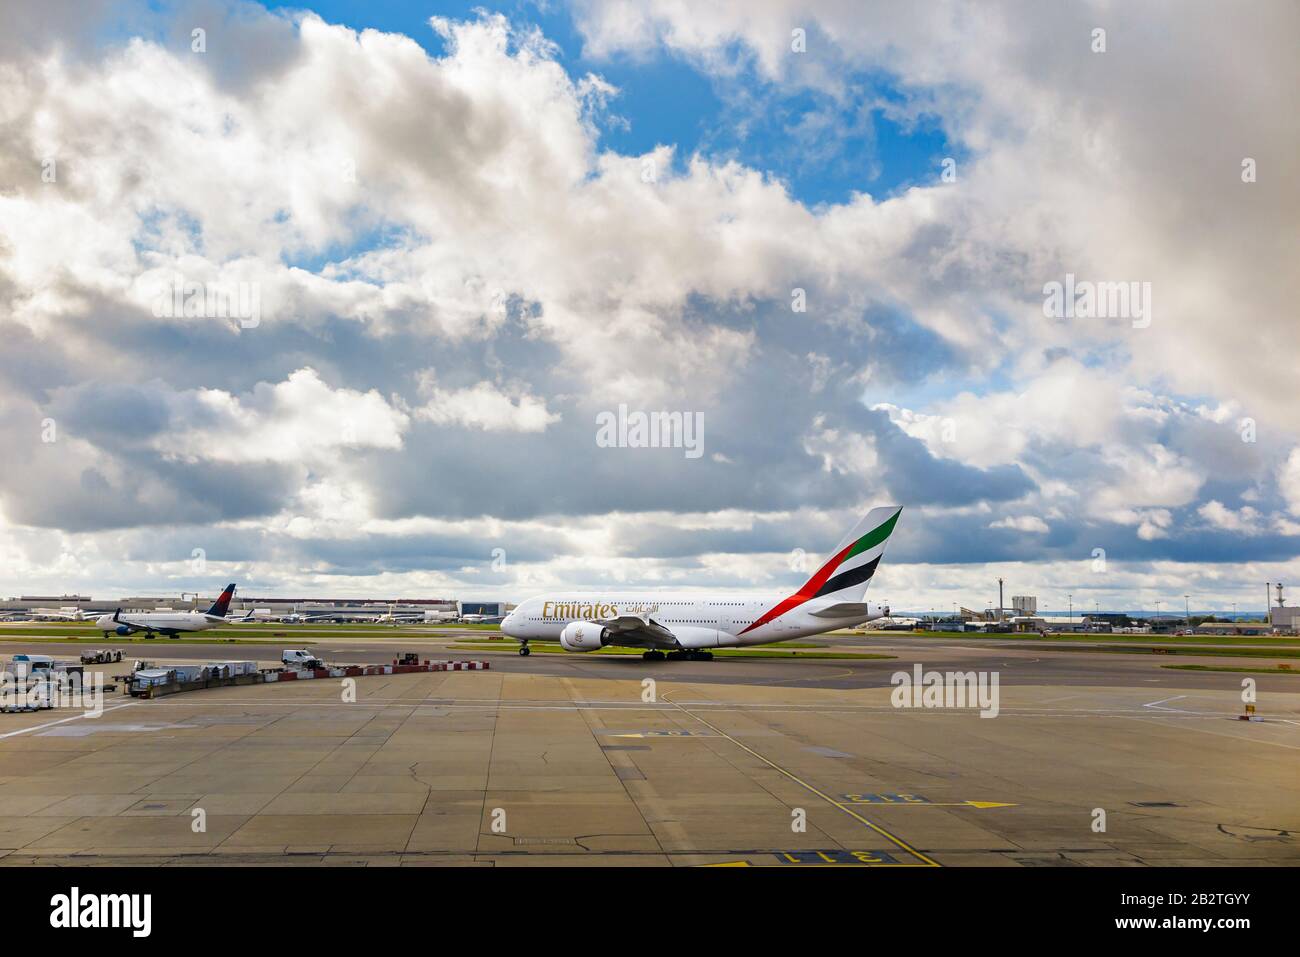 Emirates Airbus A 380-861 en privilège d'entreprise debout sur la piste de l'aéroport Heathrow de Londres sur la piste en attente de décollage sous de lourds nuages sombres Banque D'Images